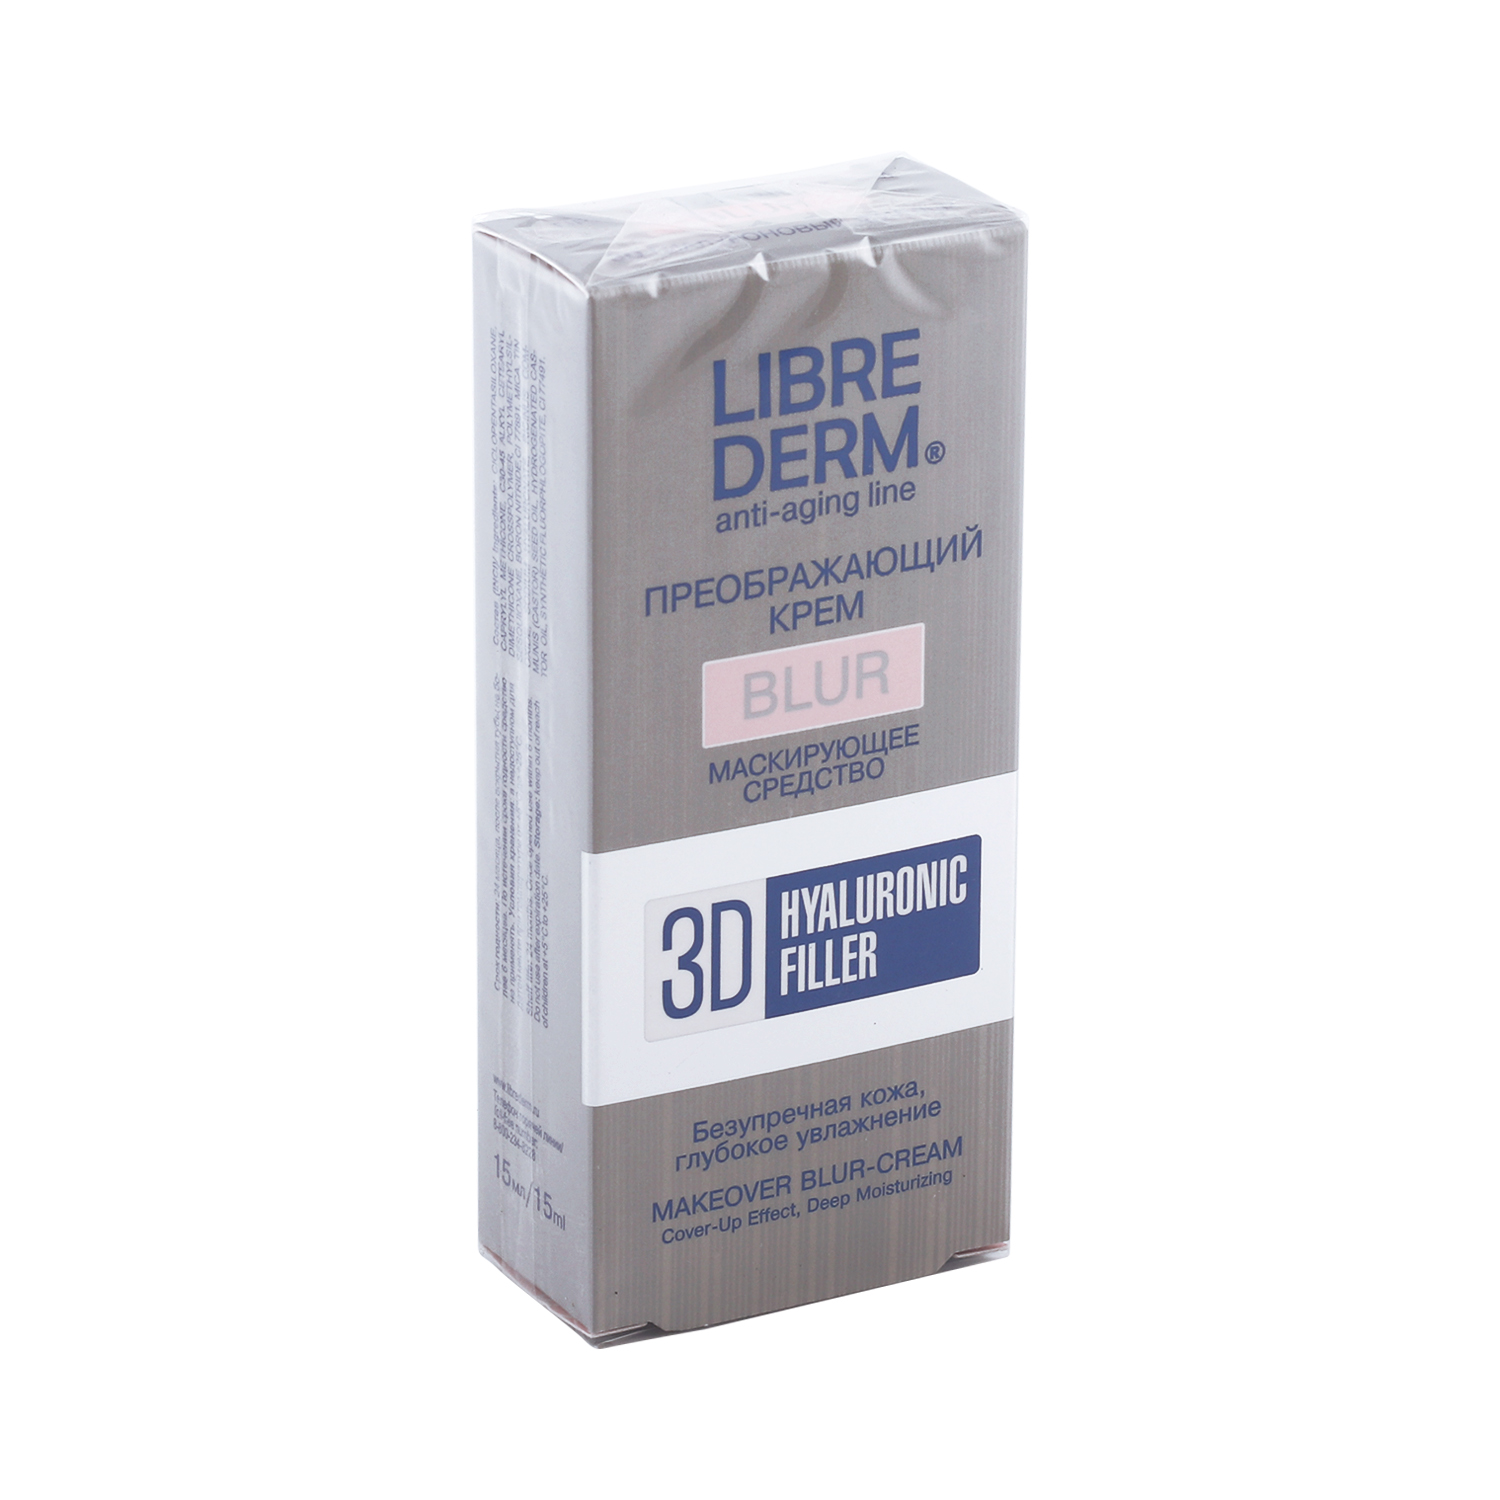 Либридерм крем-блур для лица преображающий гиалуроновый 3Д филлер 15мл, Дина+  - купить